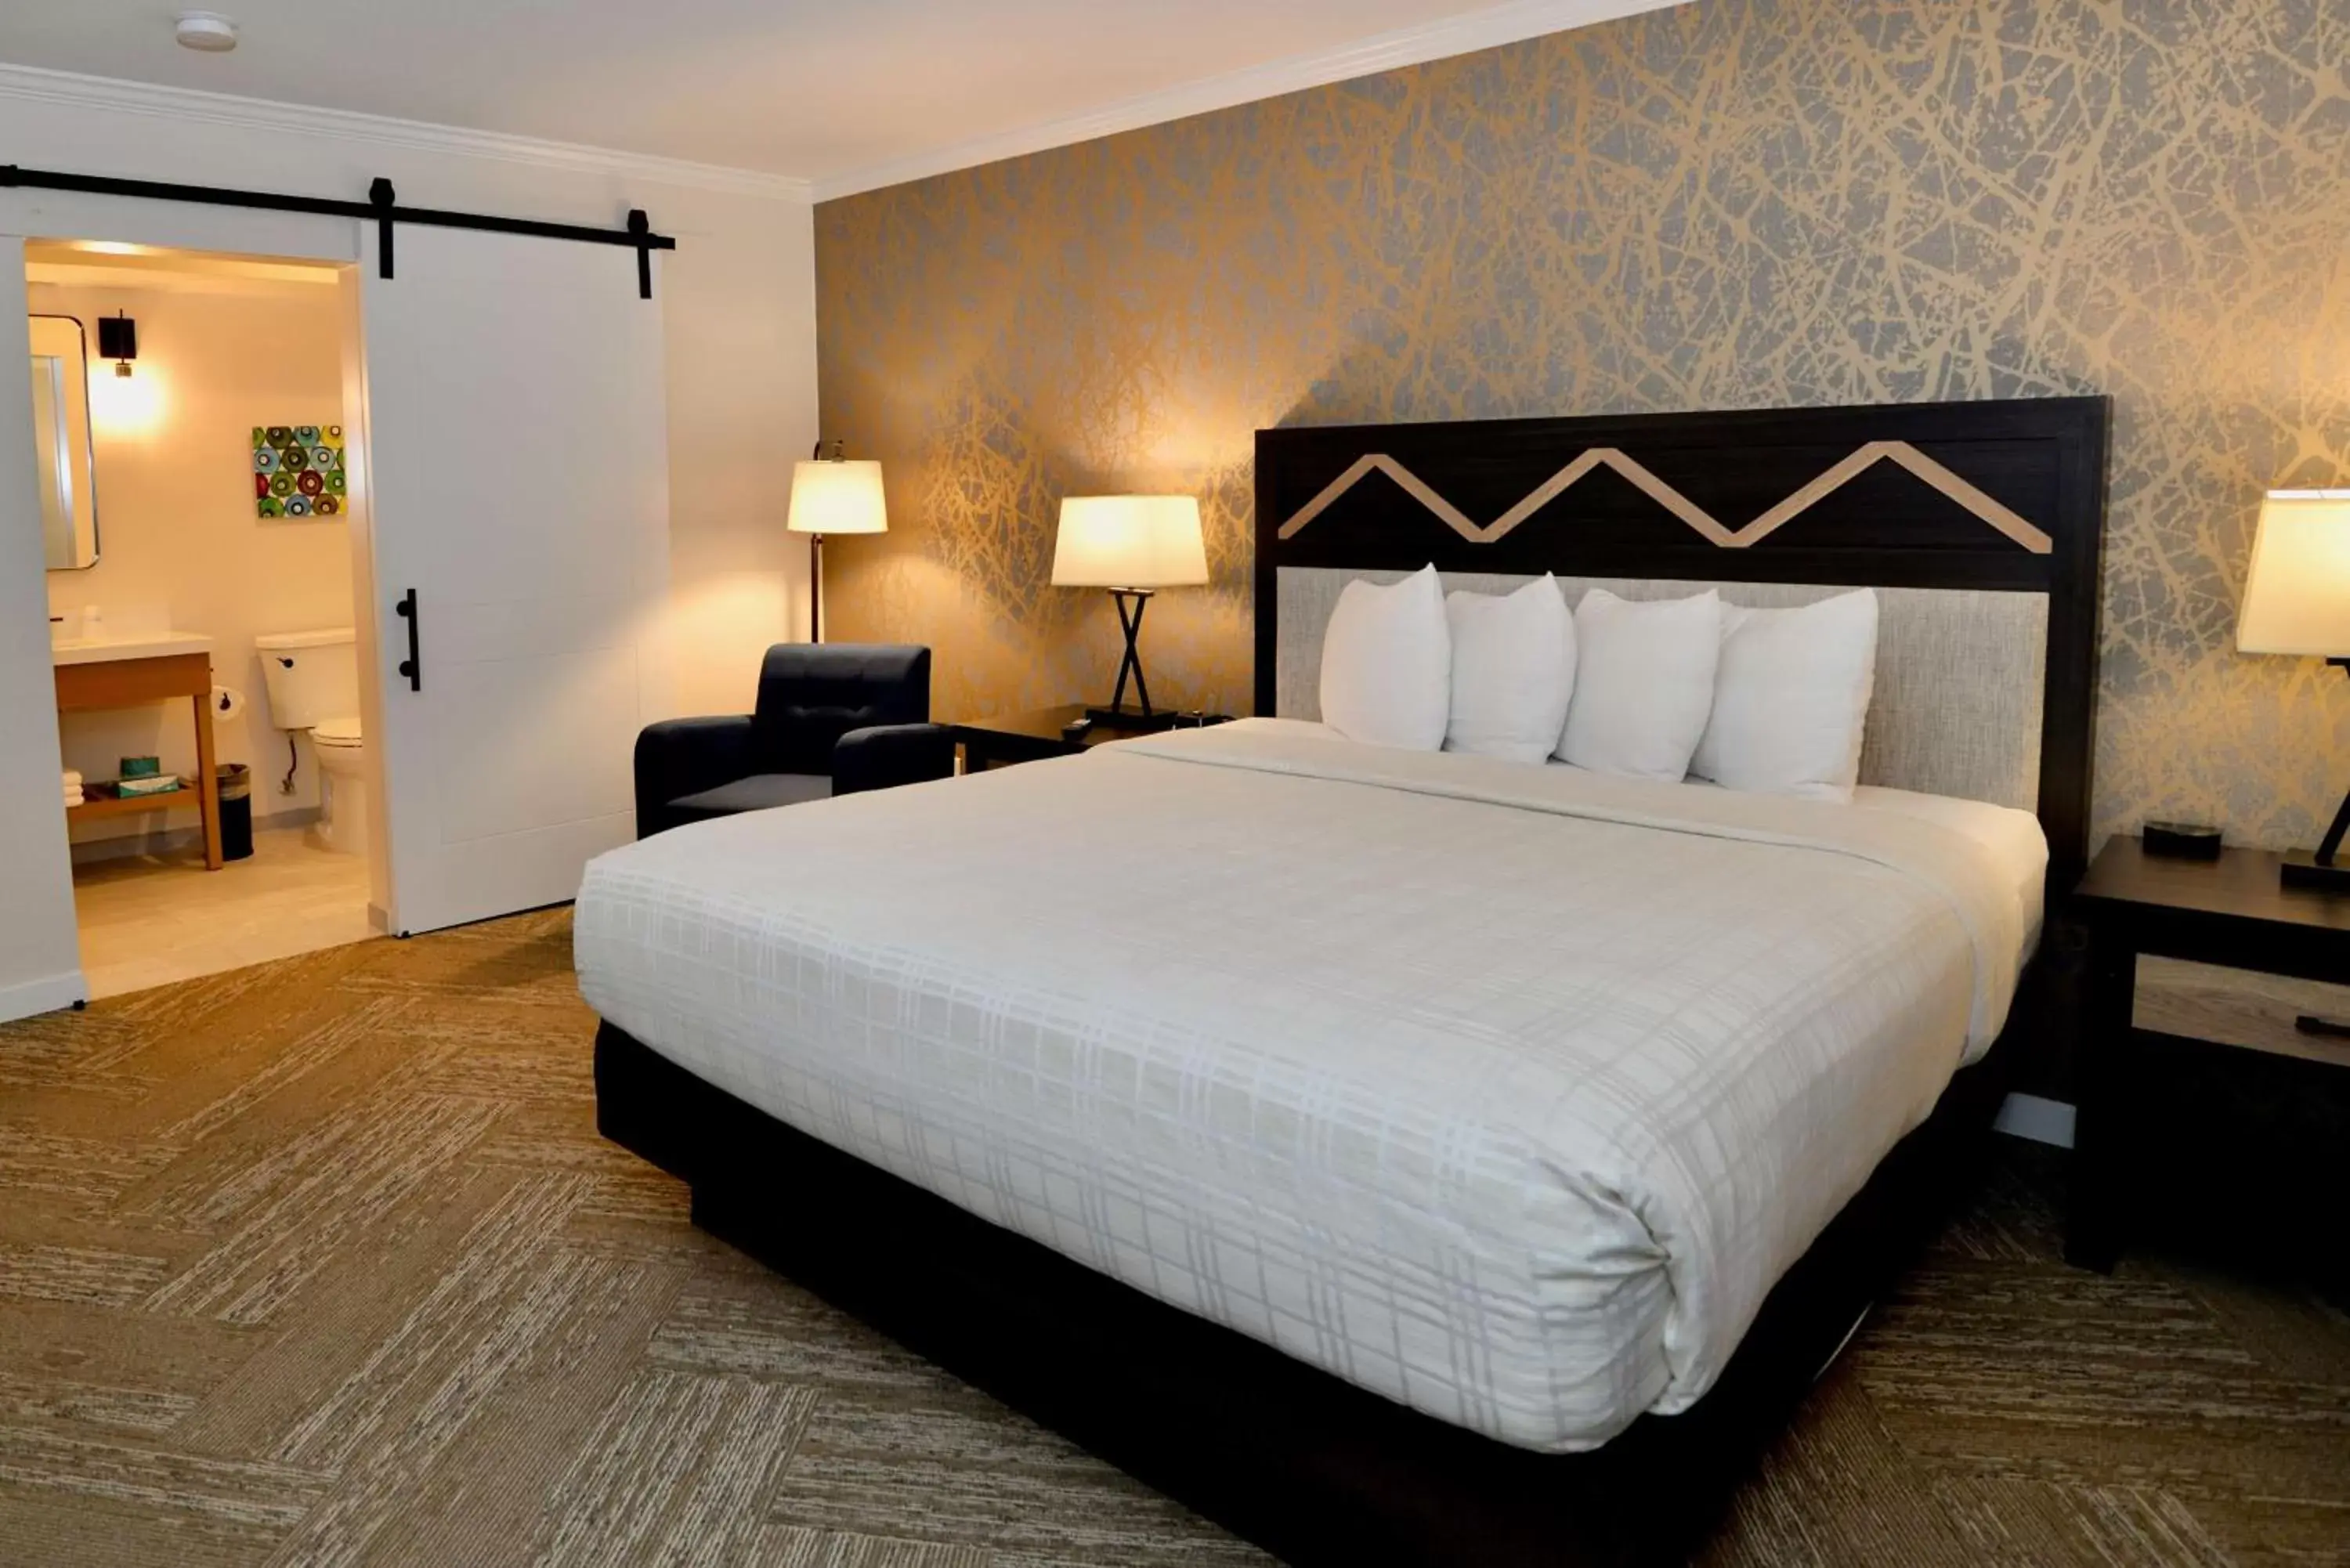 Bedroom, Bed in Best Western Plus Inn at the Vines